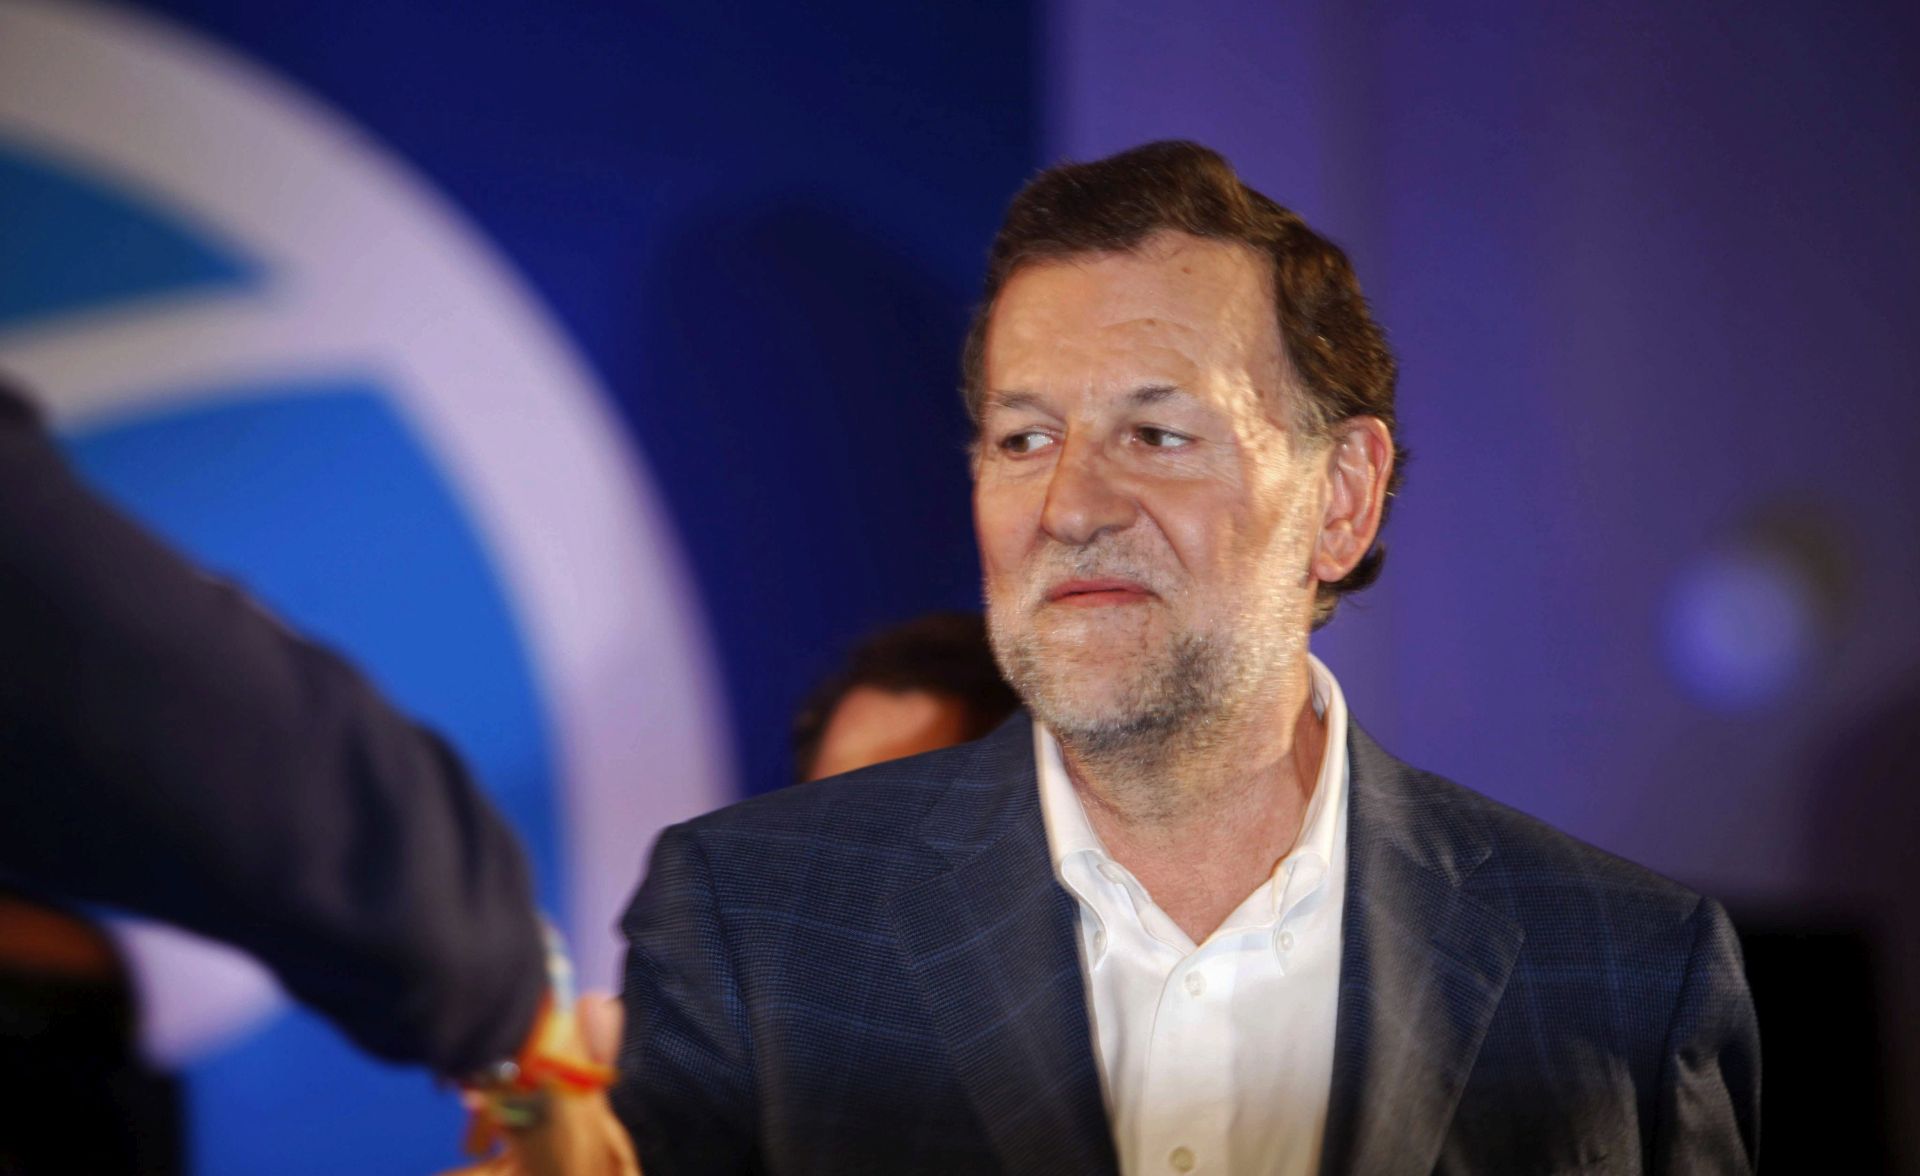 NAPADAČ UHIĆEN: Mariano Rajoy na predizbornom skupu dobio udarac u glavu